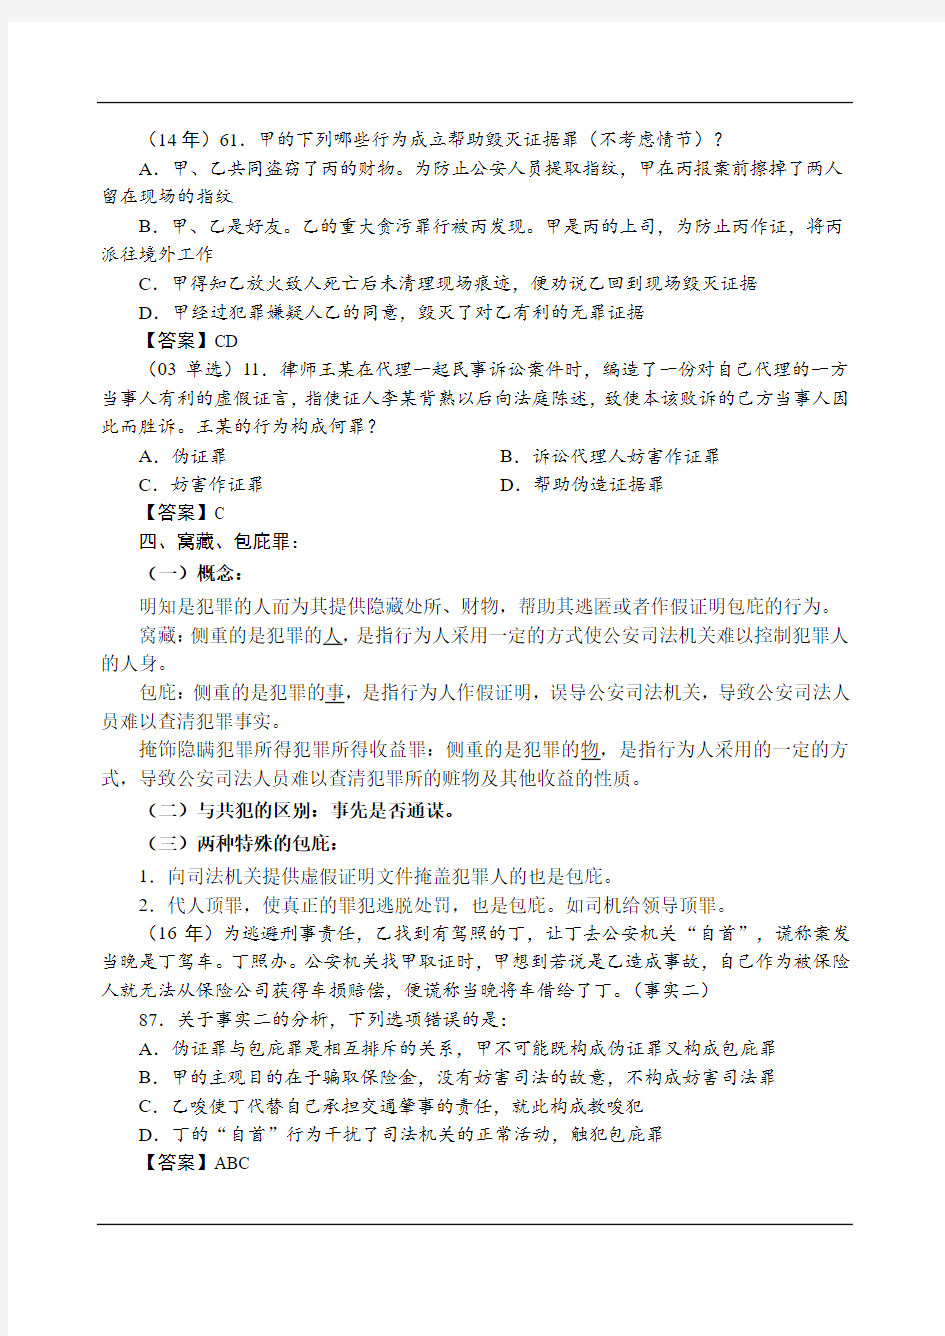 2019强化讲义刑法-第33节-妨害社会管理秩序罪(2)-陈永生